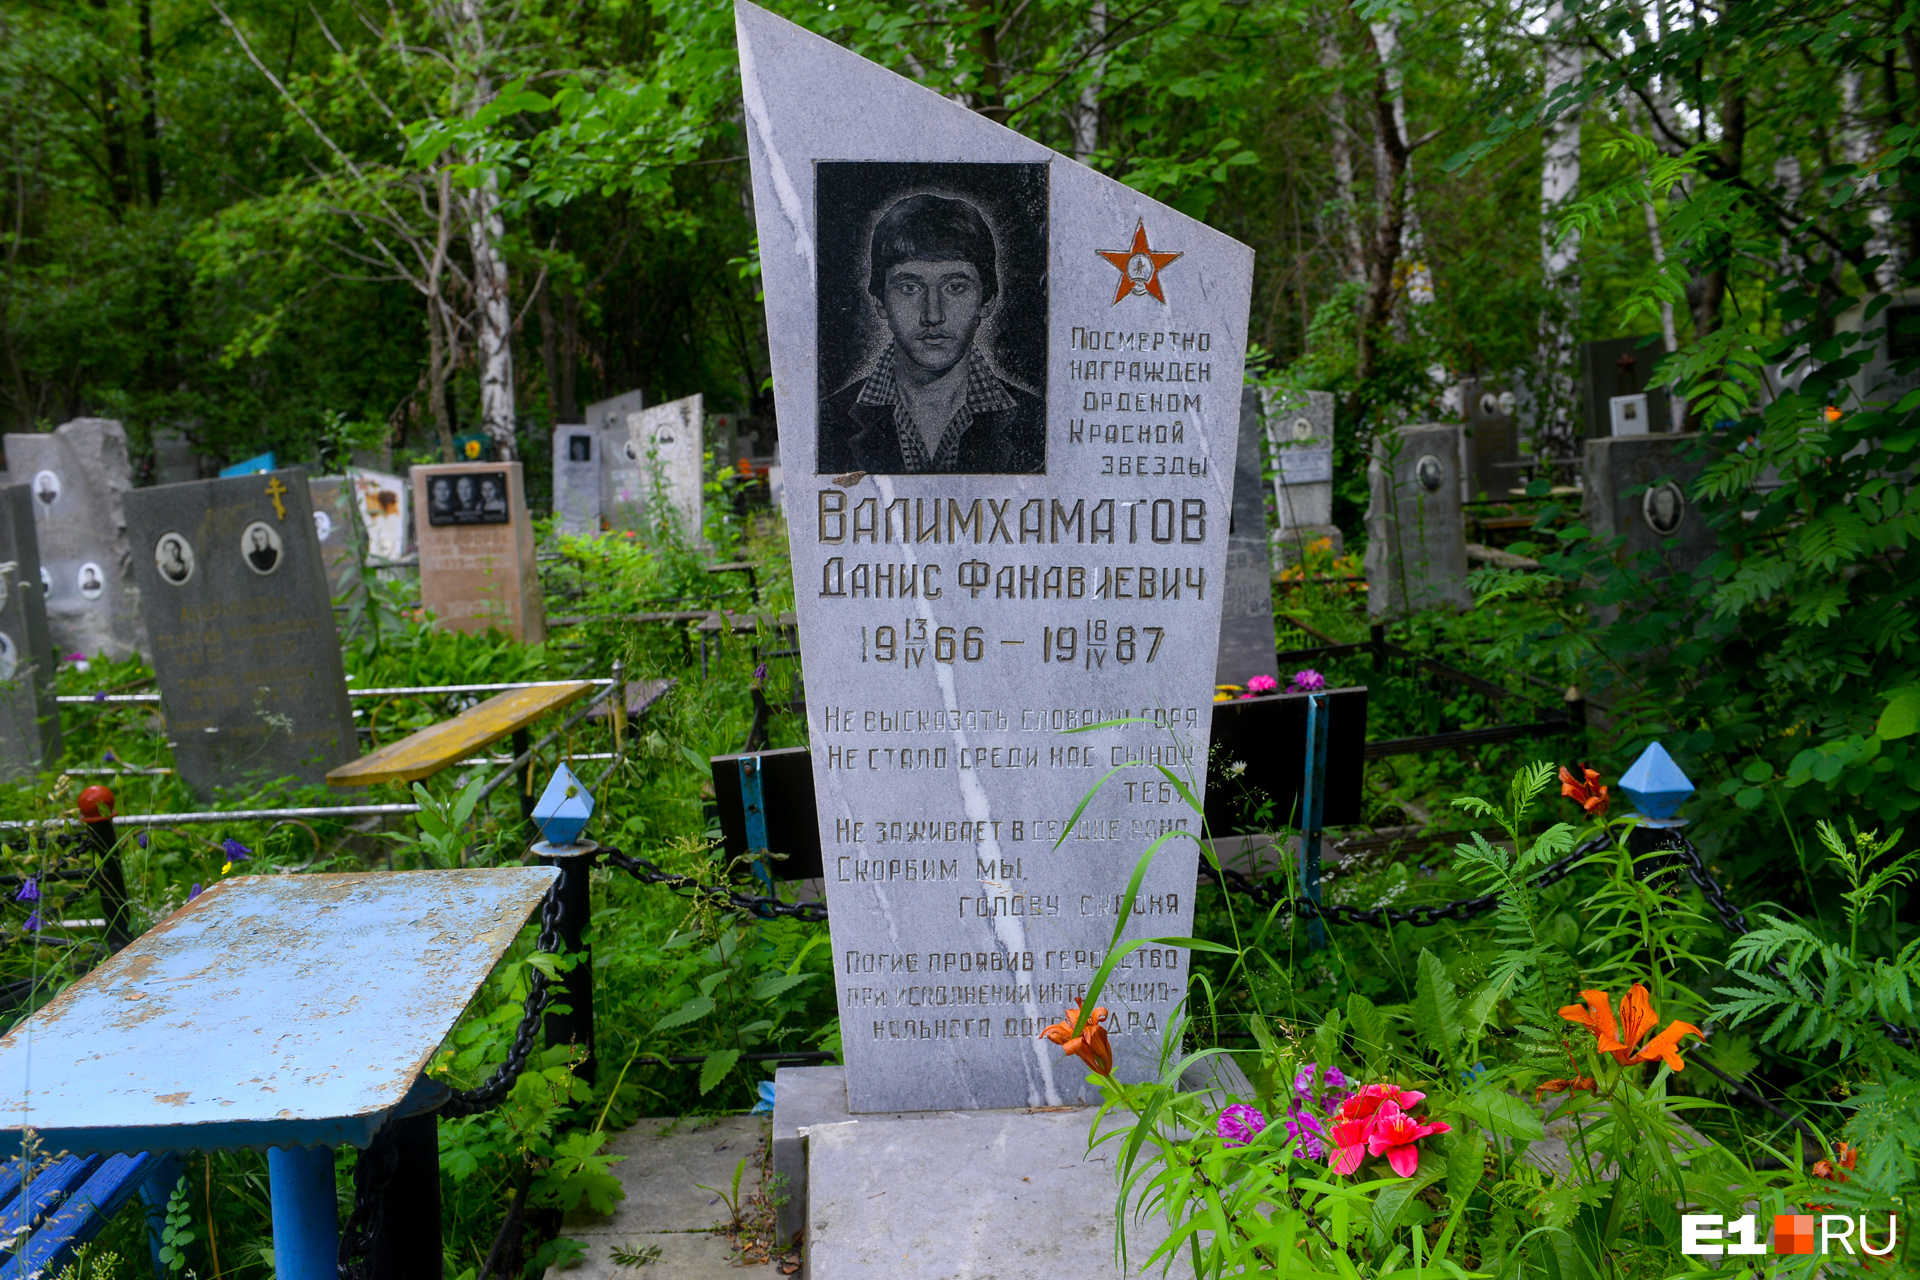 Данис Валимхаматов погиб в Афганистане в 1987 году. Во время боя с моджахедами под командованием Даниса его расчет уничтожил несколько пулеметных точек. Однако были ранены трое человек, в том числе Данис. Он награжден орденом Красной Звезды посмертно. В его честь названа школа № 98 в поселке Садовом, а также одна из улиц